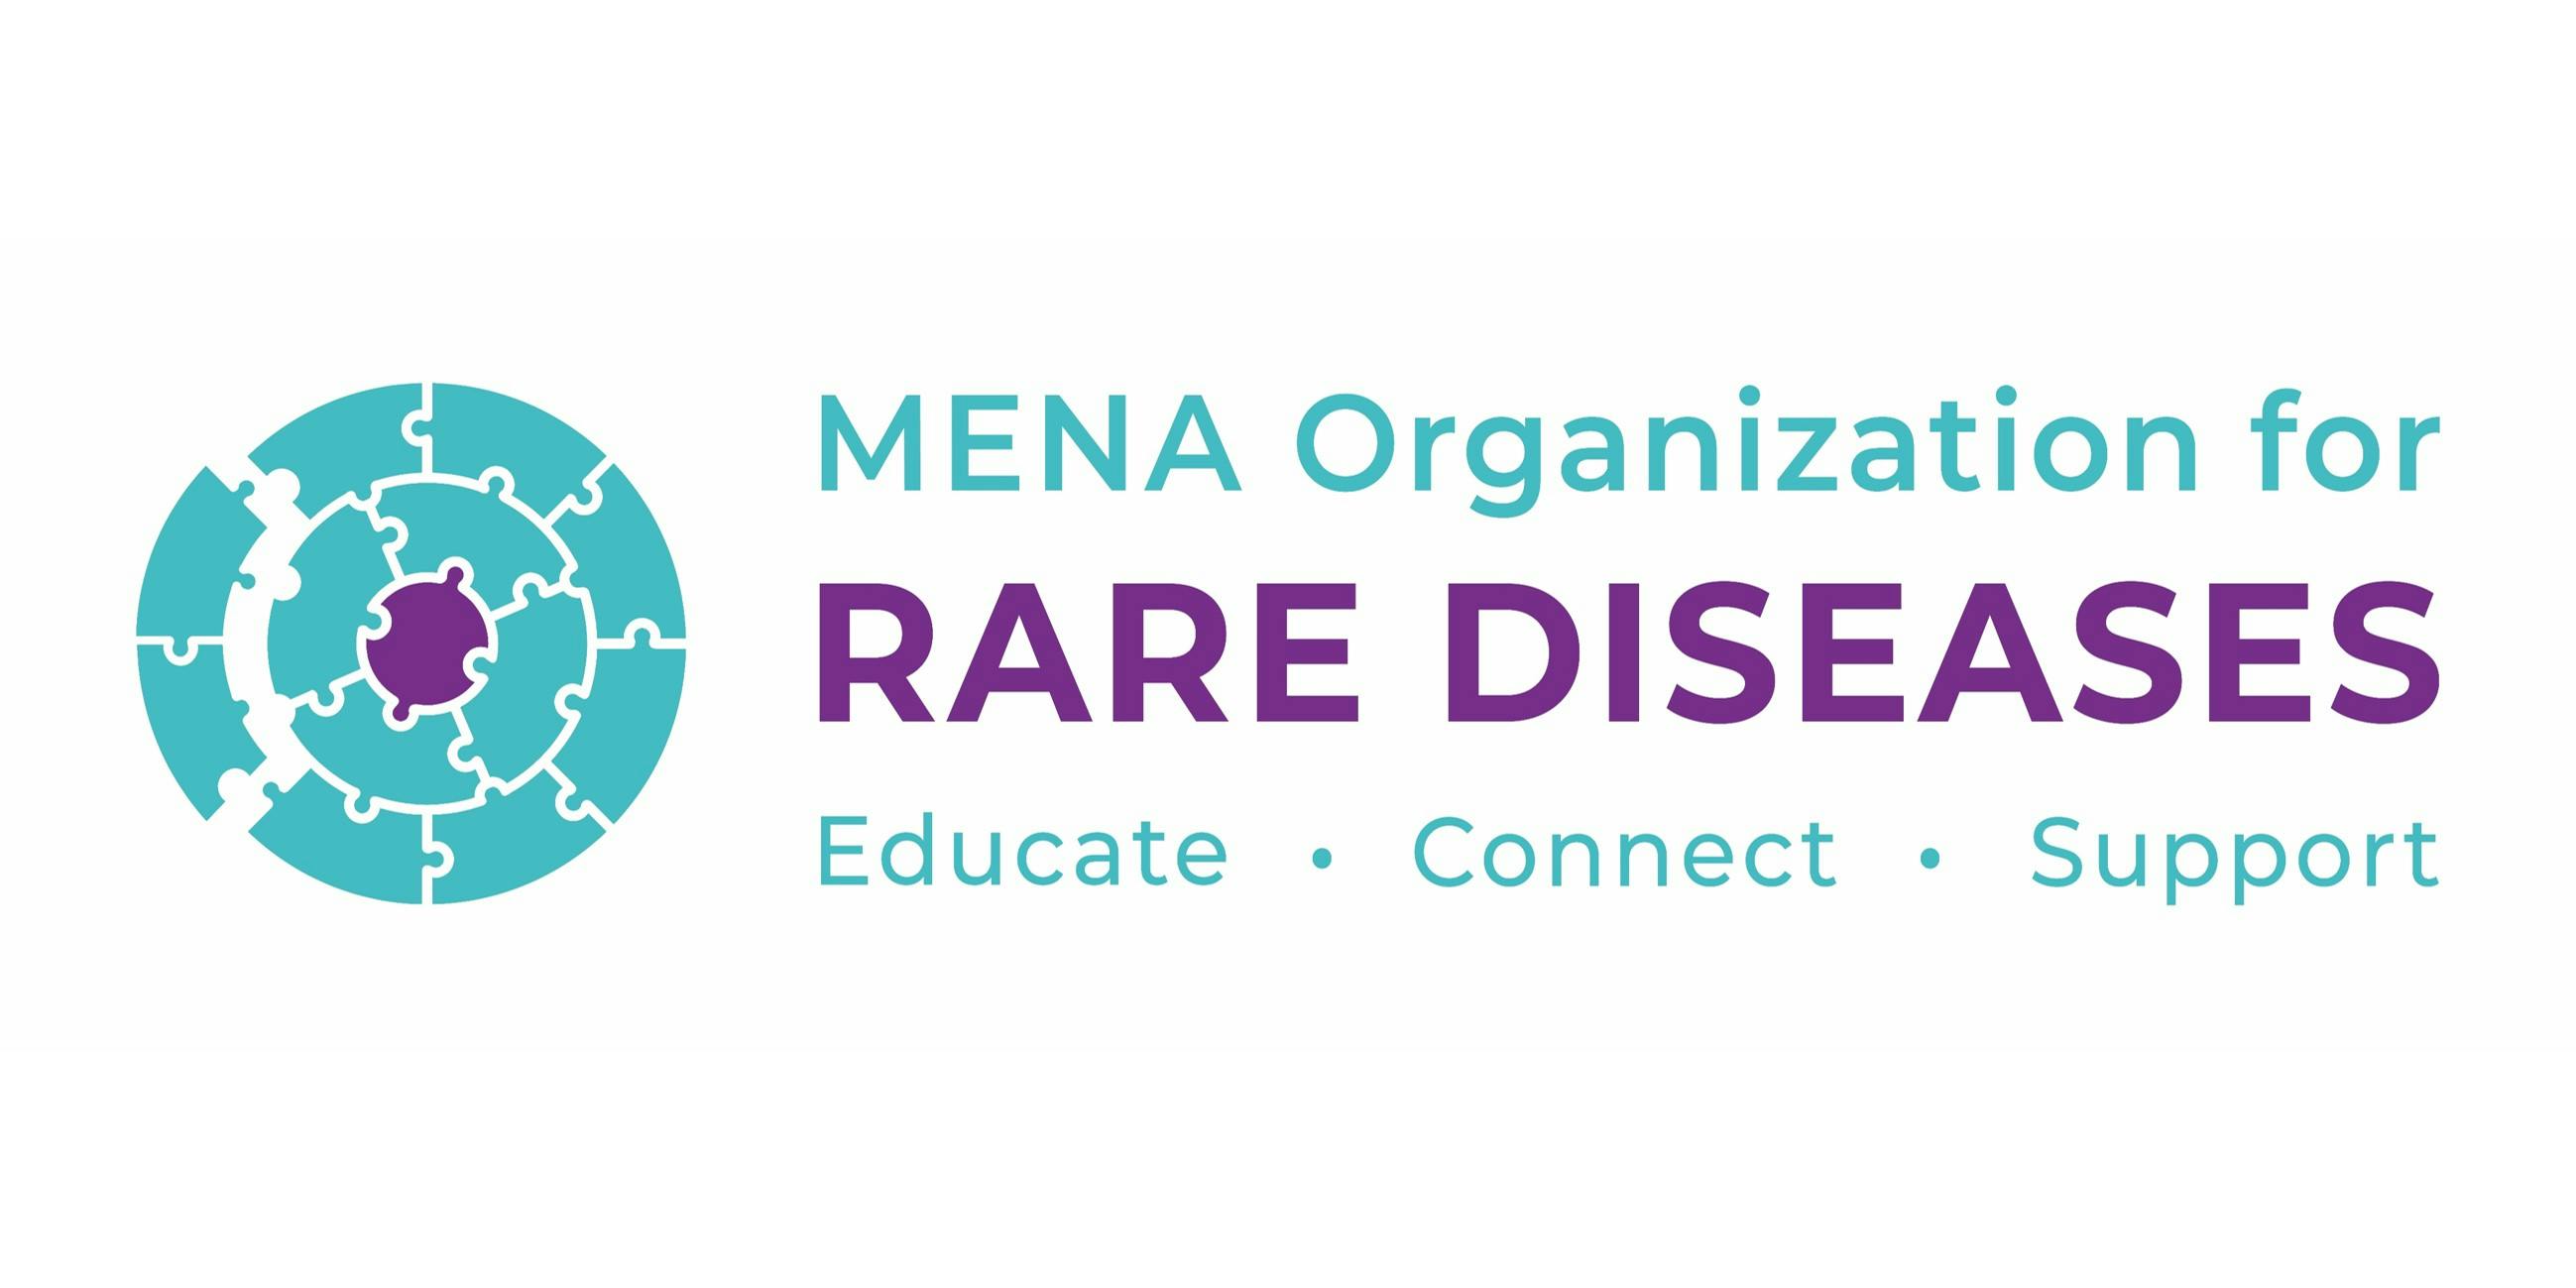 Rare Diseases in the MENA Region